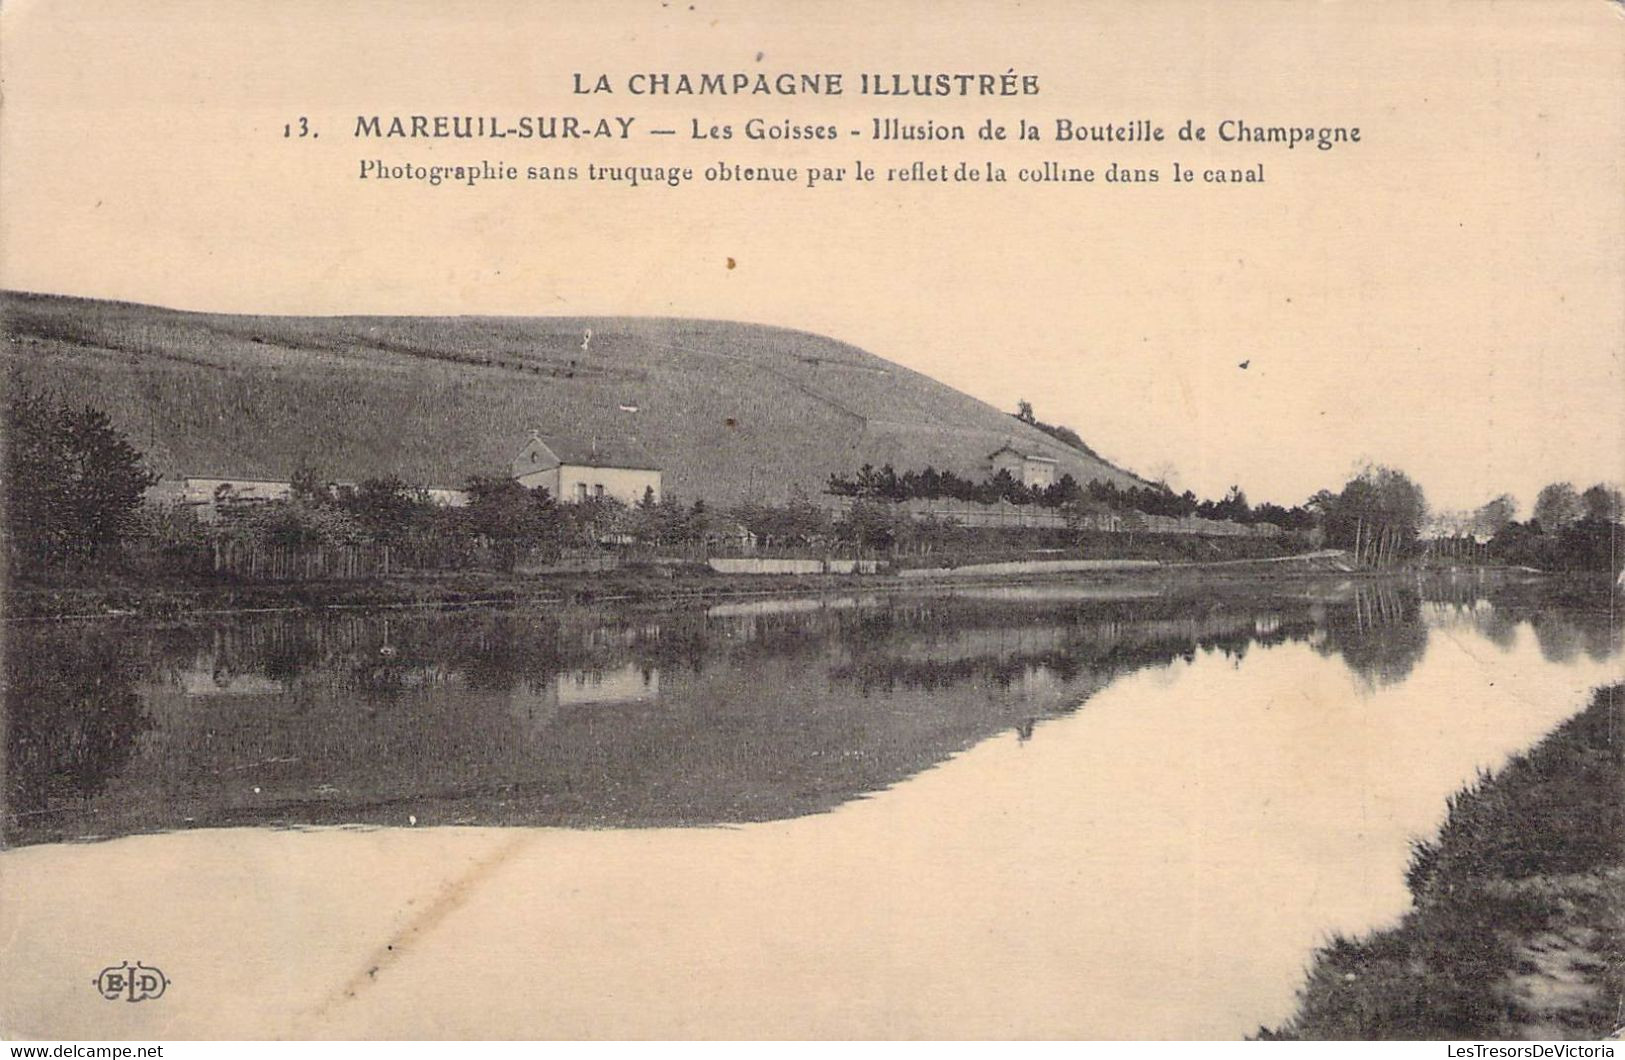 CPA France - 51 - MAREUIL SUR AY - LES GOISSES - Illusion De La Bouteille De Champagne - ELD - Champagne Illustrée - Mareuil-sur-Ay